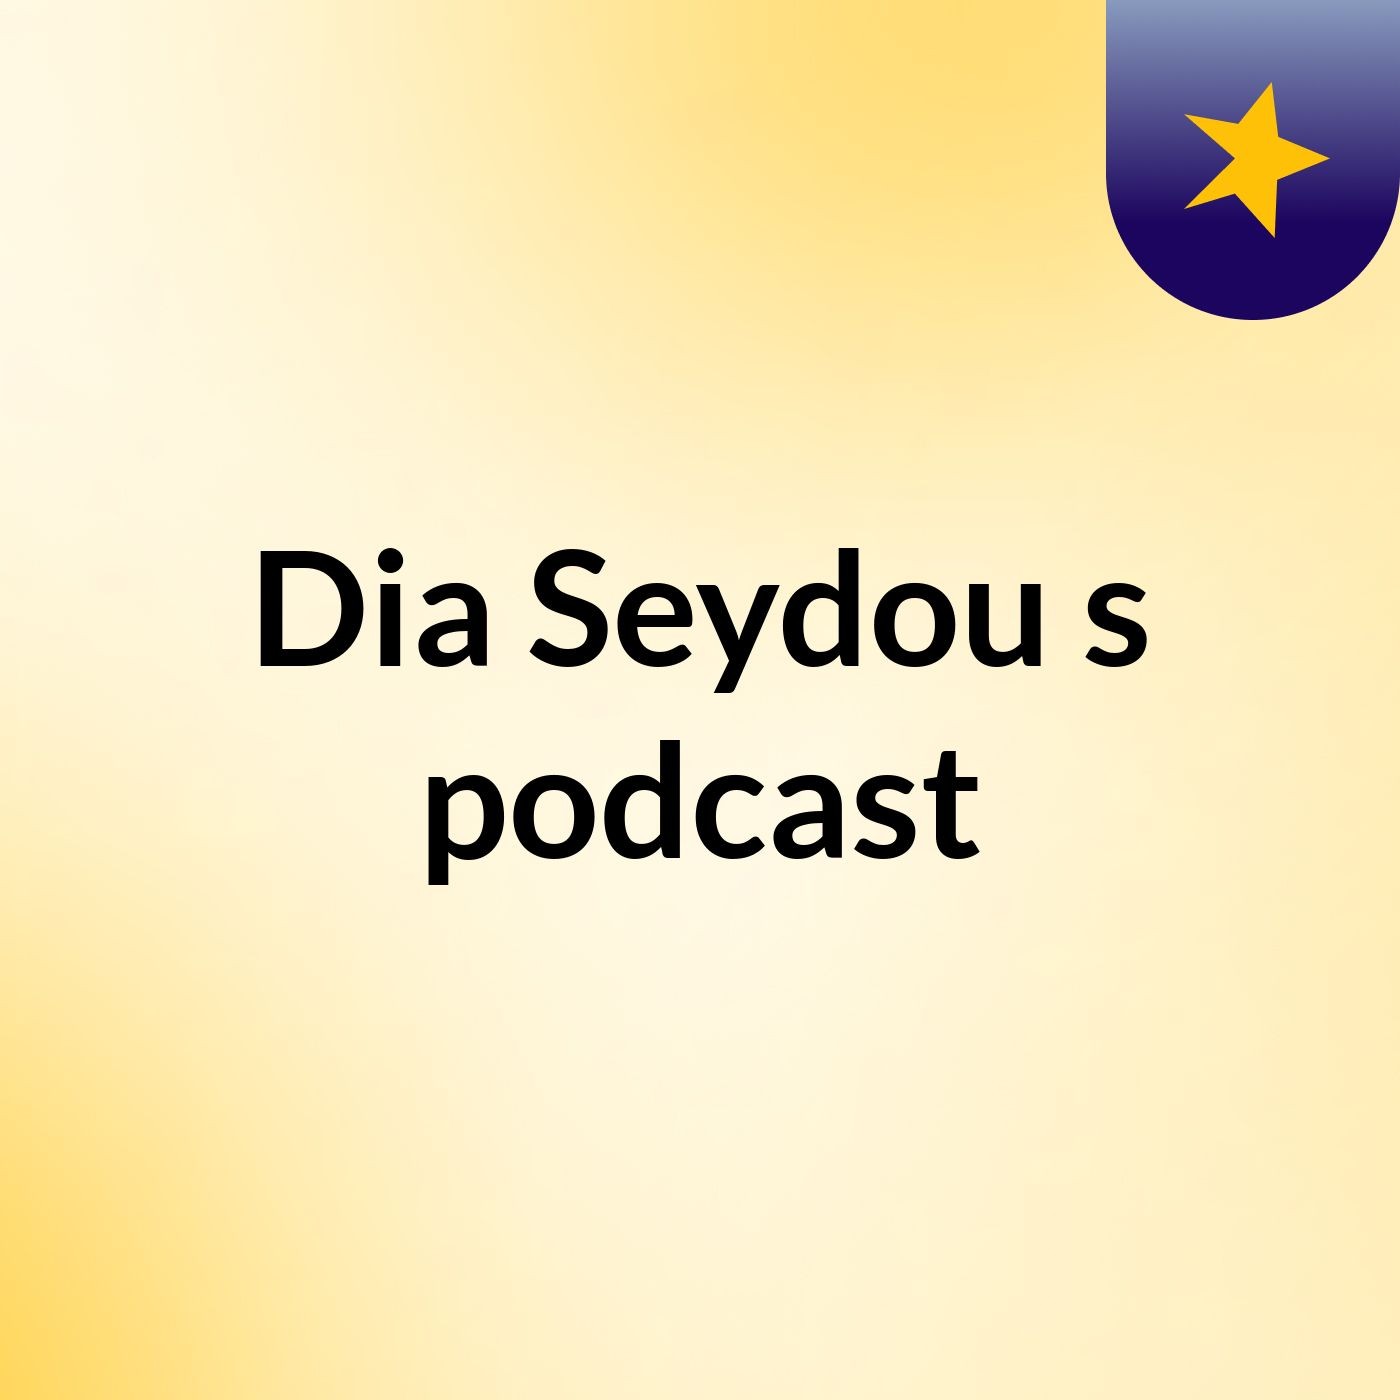 Episode 4 - Dia Seydou's podcast